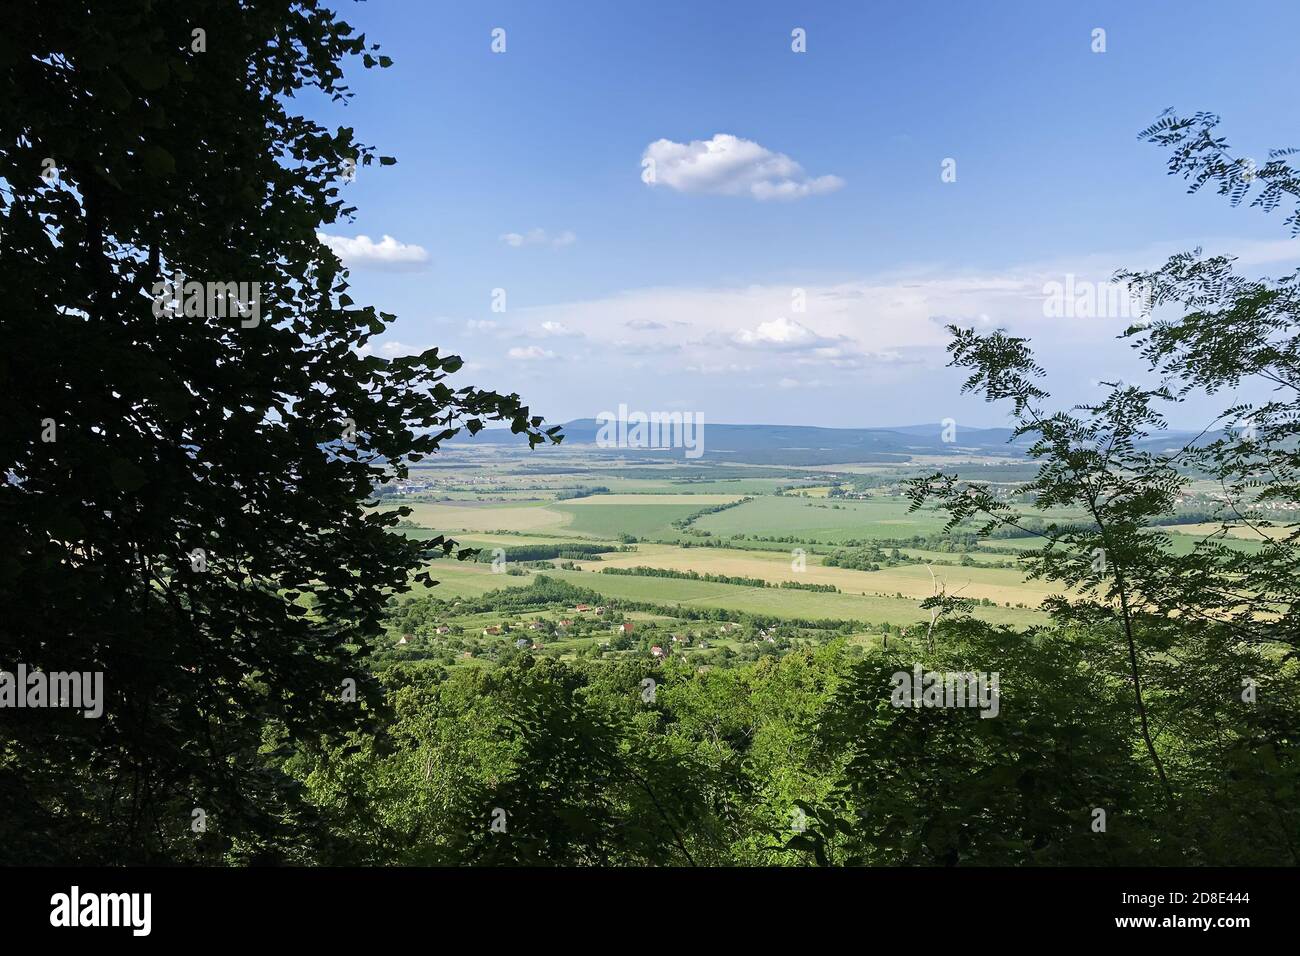 Paisaje húngaro con vistas de prados y colinas contra el cielo azul a través de las ramas de los árboles en primer plano. Foto de stock